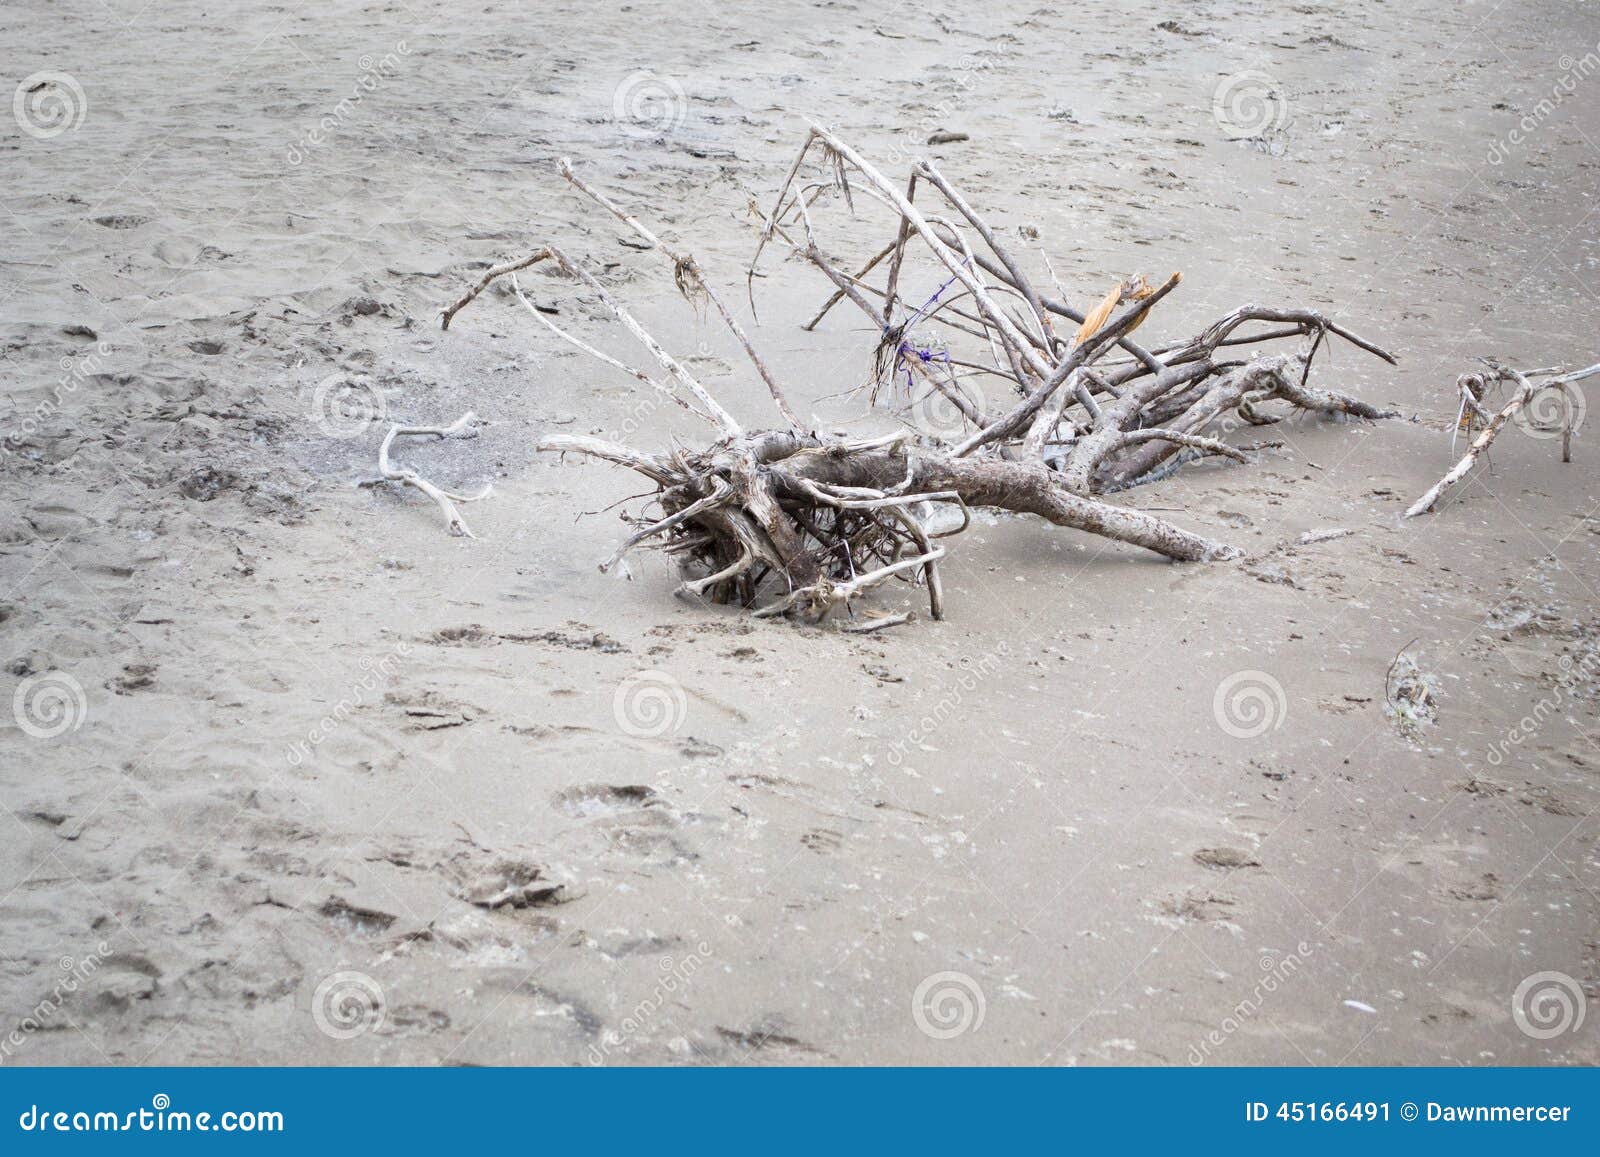 Κλαδιά και κλάδοι δέντρων στην άμμο. Η φωτογραφία των κλαδιών και των κλάδων δέντρων έπλυνε επάνω στην ξηρά στην αμμώδη παραλία Φωτογραφία που λαμβάνεται στη μακριά παραλία σημείου, Οντάριο Καναδάς